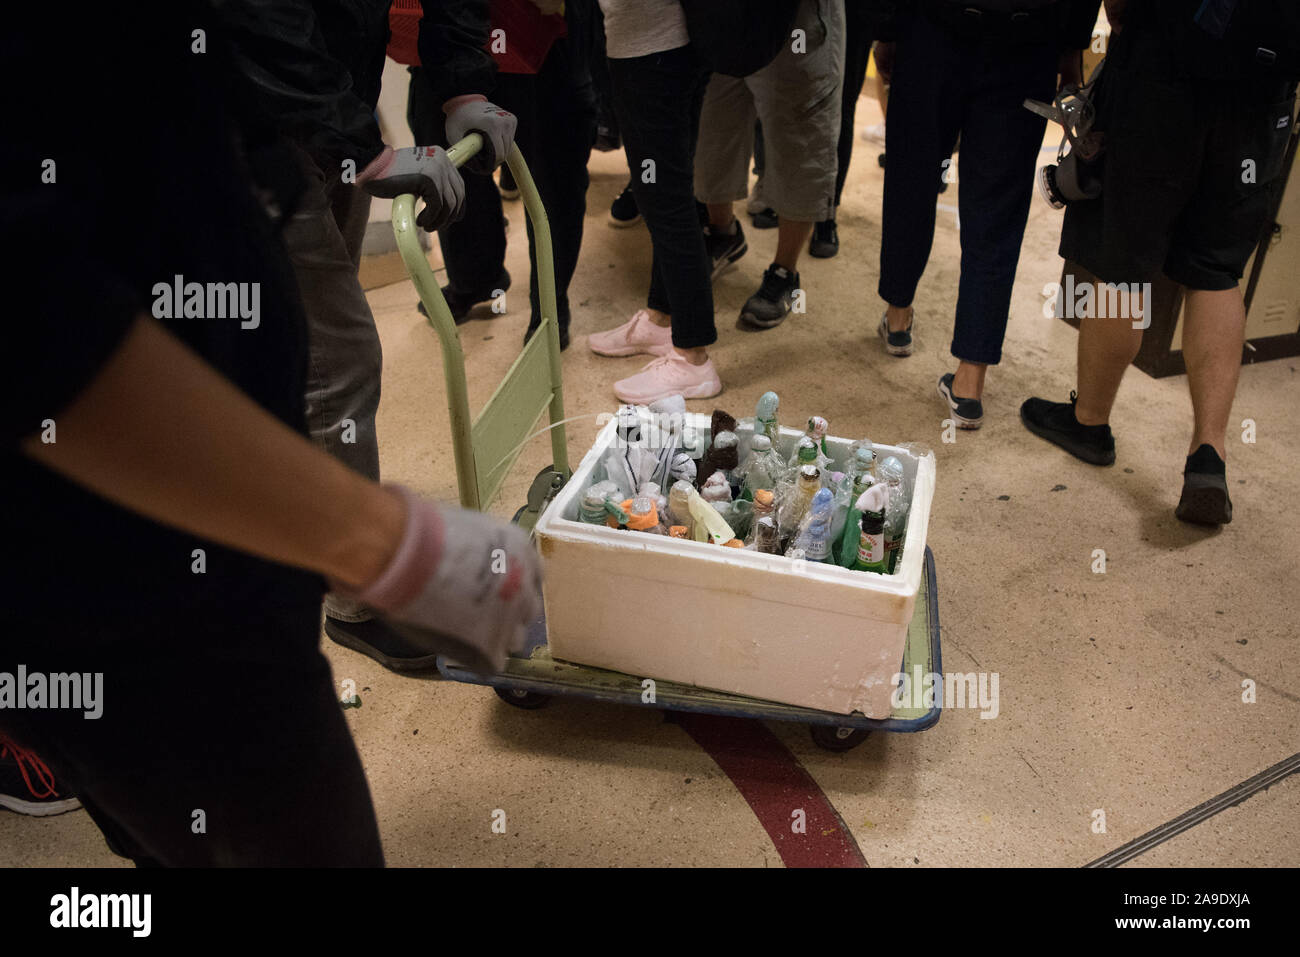 Die Demonstranten transport Benzinbomben in Hong Kong Polytechnic University während der Demonstration. Demonstranten in Hongkong haben jetzt die wichtigsten Universitäten rund um die Stadt besetzt, als eine der längsten Strecken der Unruhen, da die pro-demokratische Bewegung begann. Trotz der umstrittenen Auslieferung Rechnung, die ursprünglich funkte die Proteste formell zurückgezogen, Demonstranten weiter auf Chief Executive Carrie Lam zu nennen Ihre restlichen Forderungen, die umfasst das allgemeine Wahlrecht, eine unabhängige Untersuchung über die Brutalität der Polizei, Rückzug des Wortes 'Zusammenrottung' zu beschreiben, die zu erfüllen Stockfoto